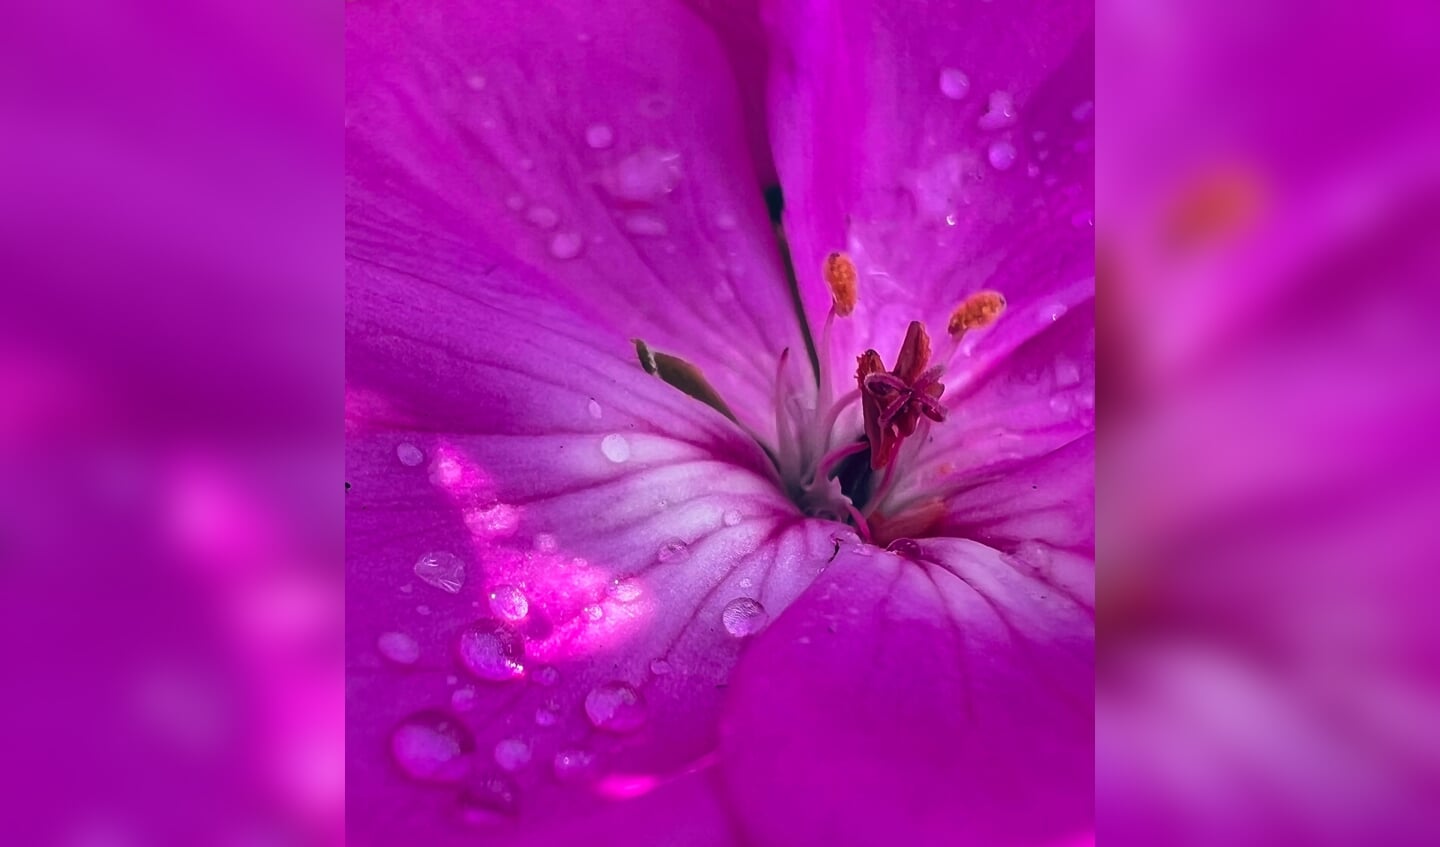 'Deze geranium groeit fantastisch deze zomer. De prachtige kleur geeft thuis een zomers vakantiegevoel. Vathorst, 27 juni 2022.'